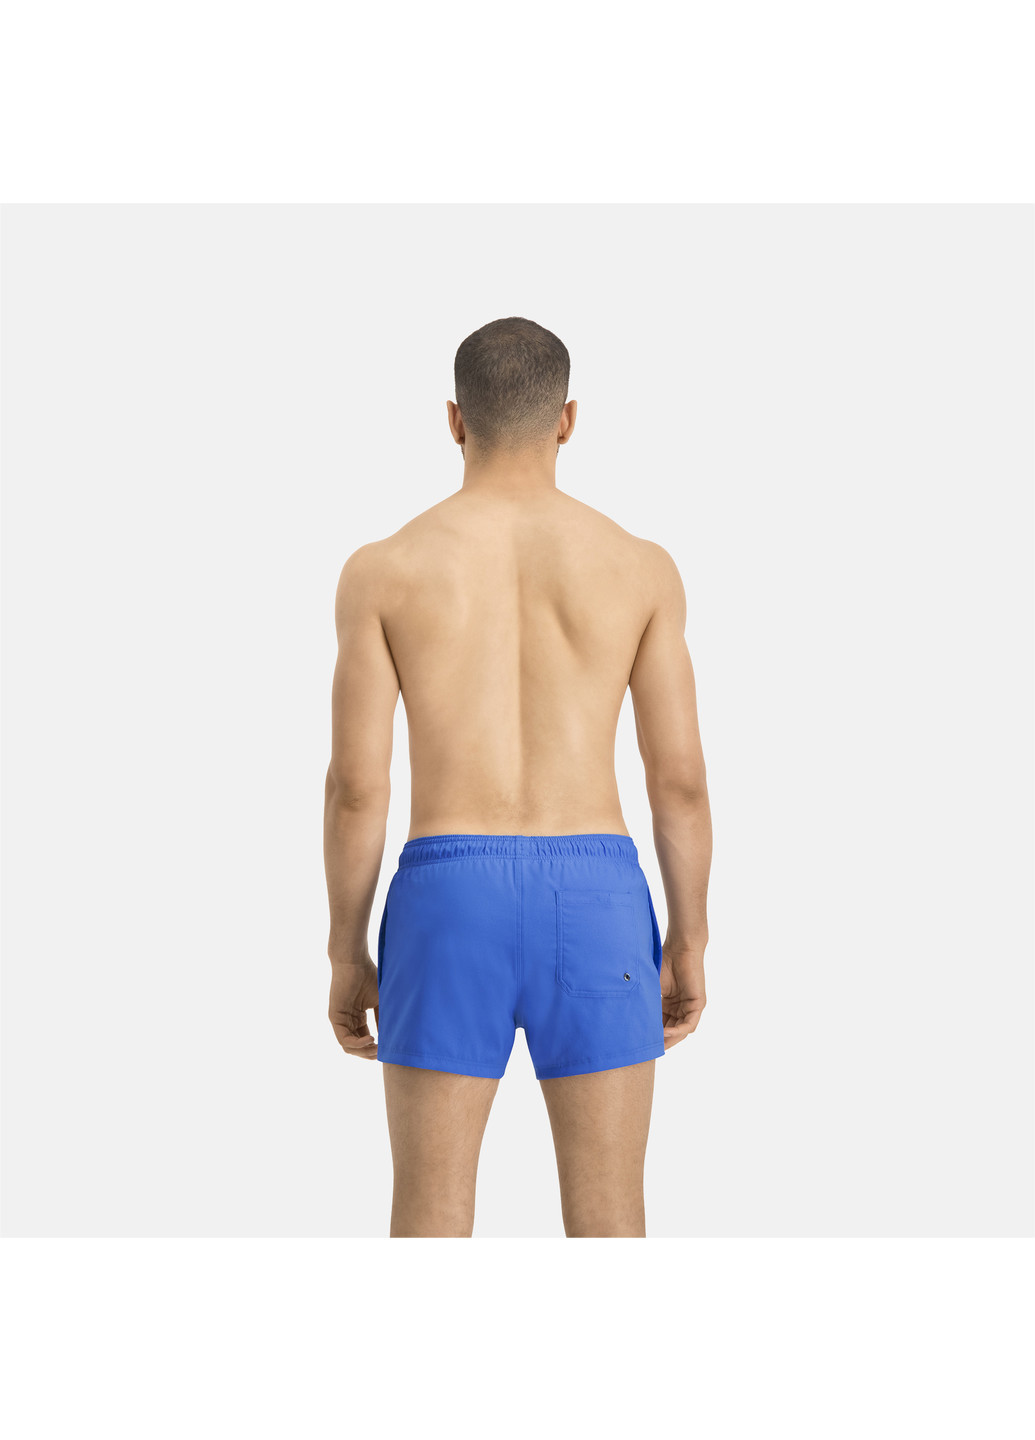 Шорты для плавания Puma Swim Men Short Length S синие спортивные